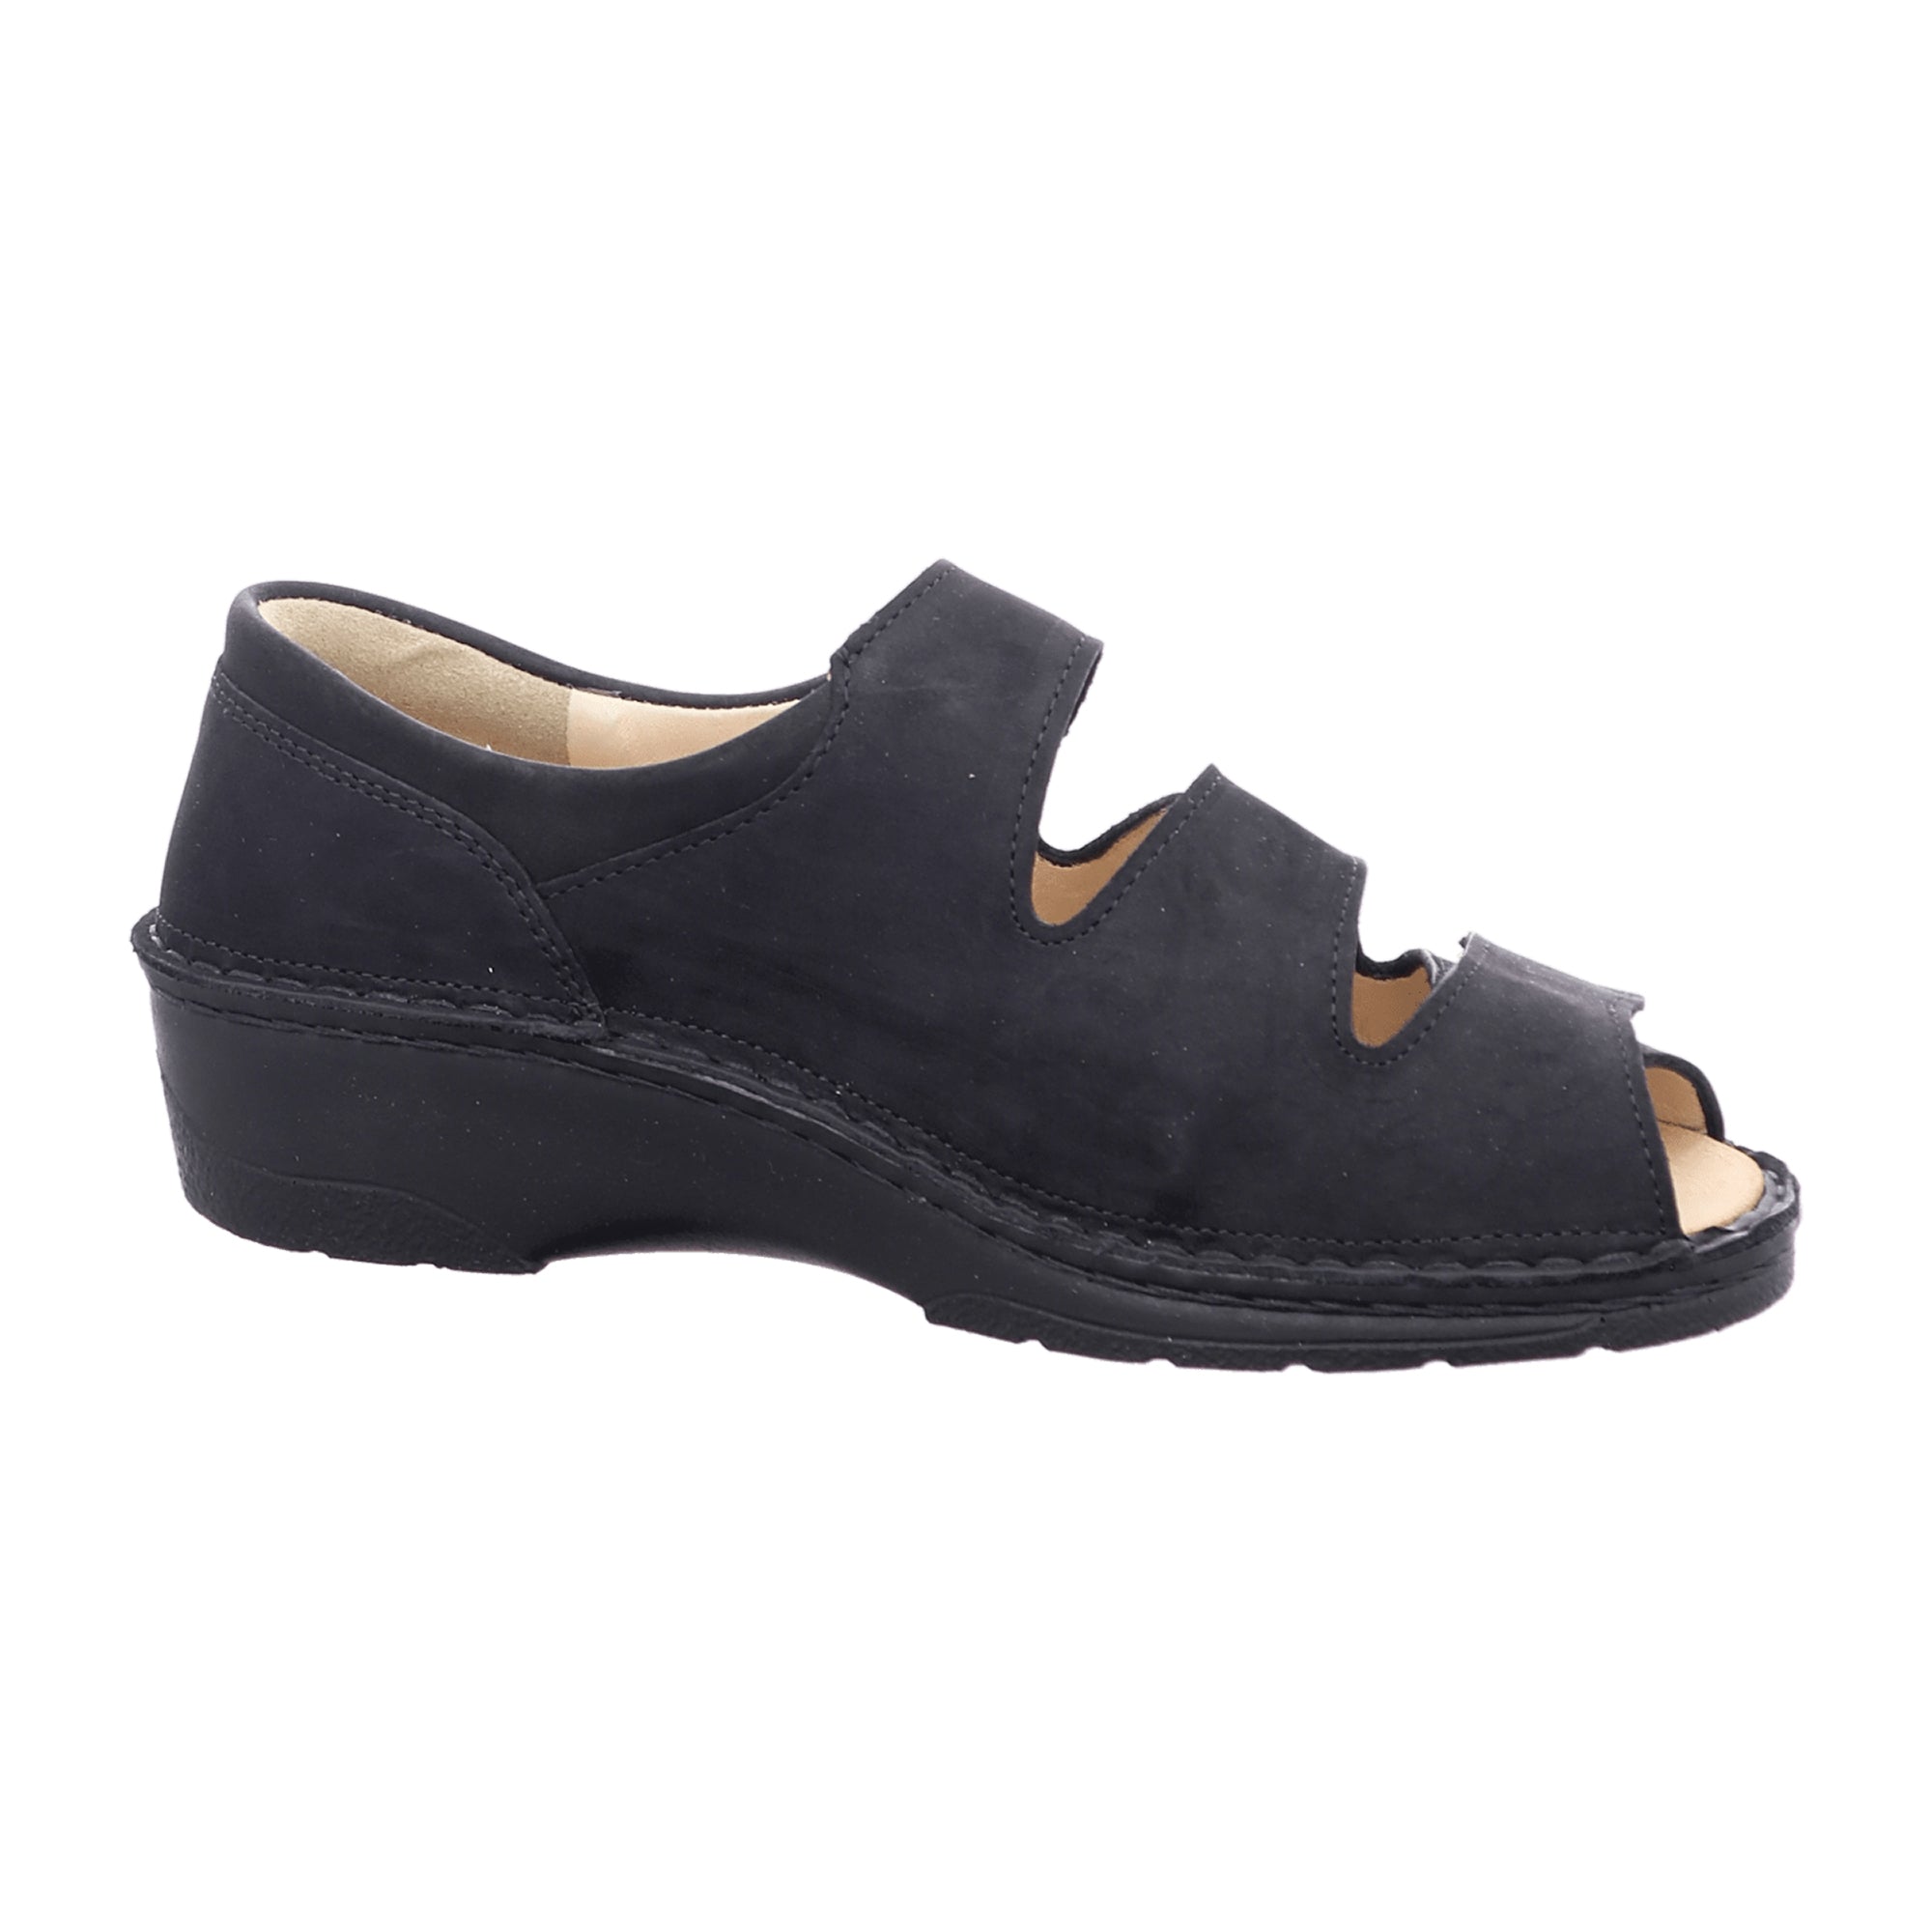 Finn Comfort Ischia Women's Comfort Sandals in Elegant Black